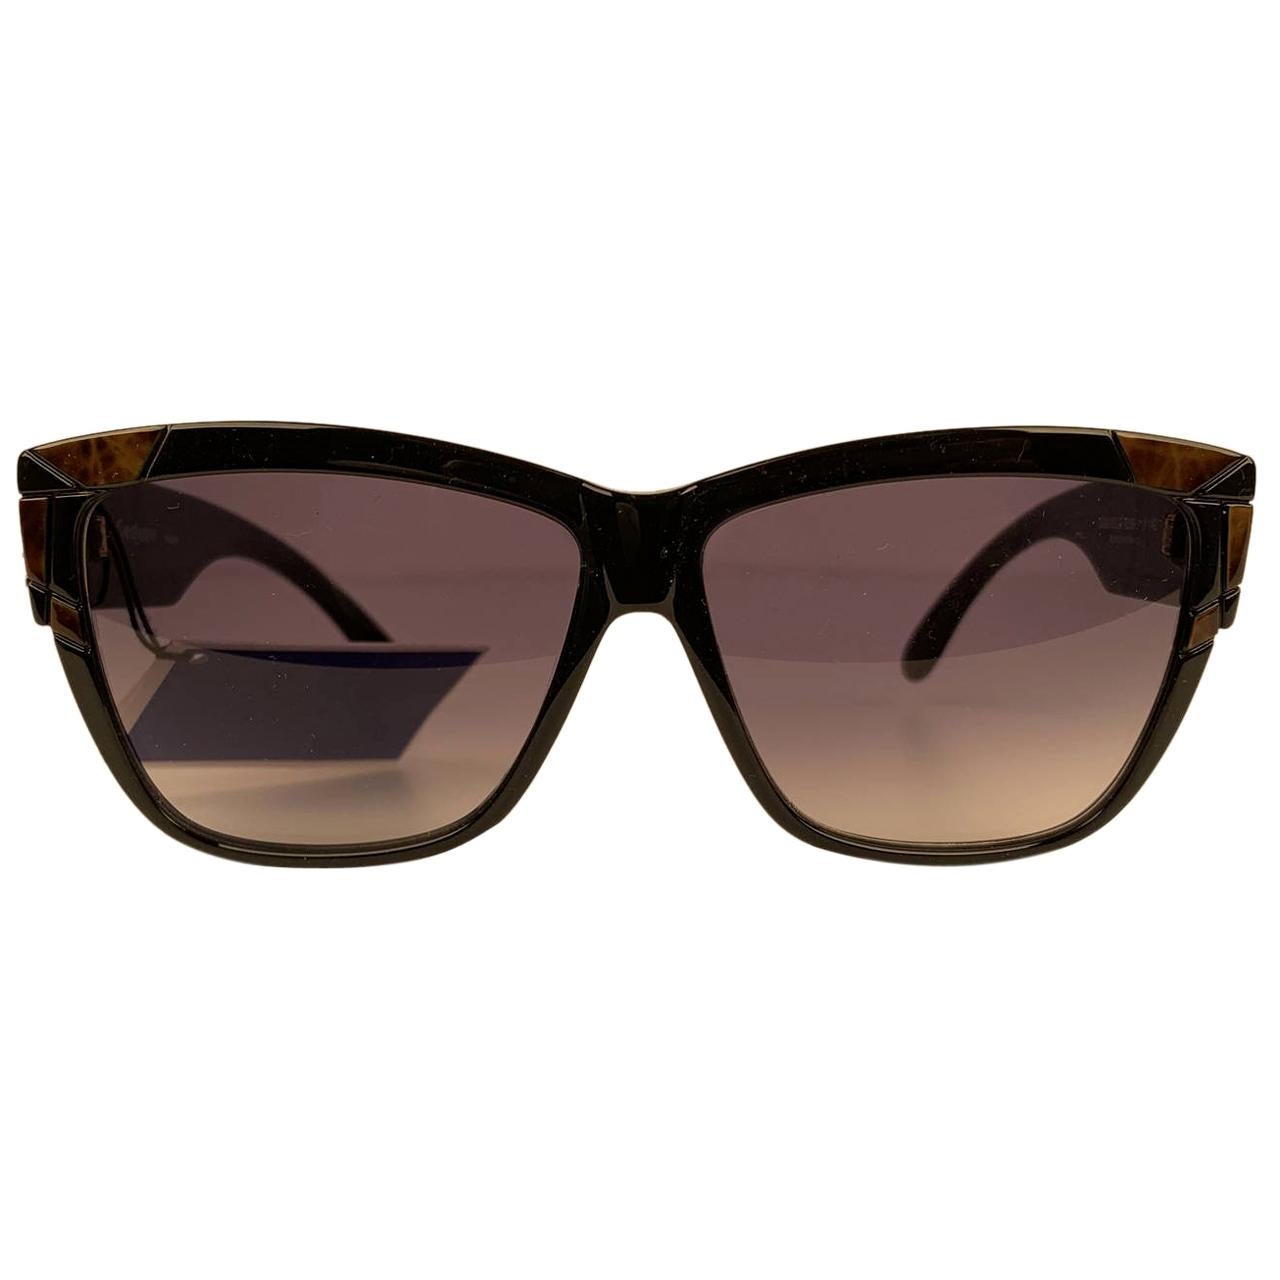 Yves Saint Laurent Vintage Black Sunglasses Deauville 8859-1 Y 142